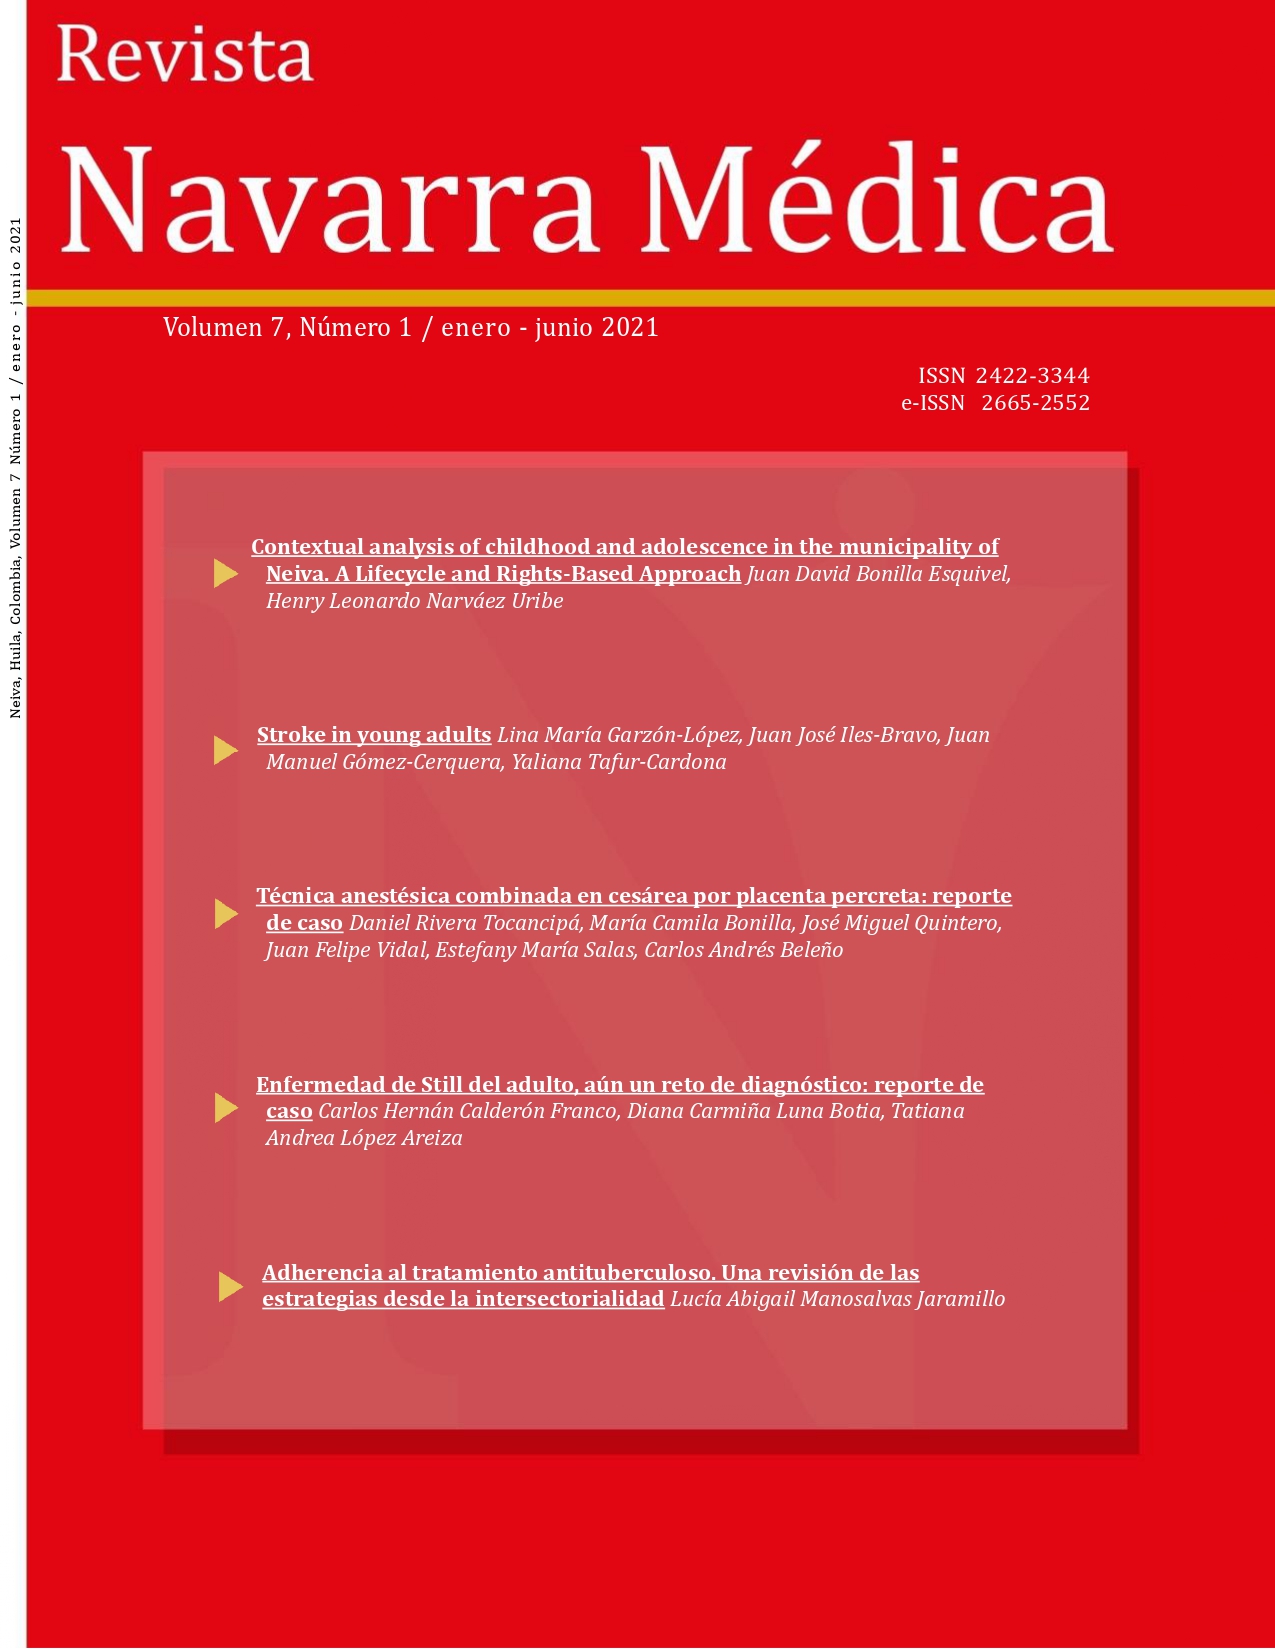 					View Vol. 7 No. 1 (2021): Revista Navarra Médica
				